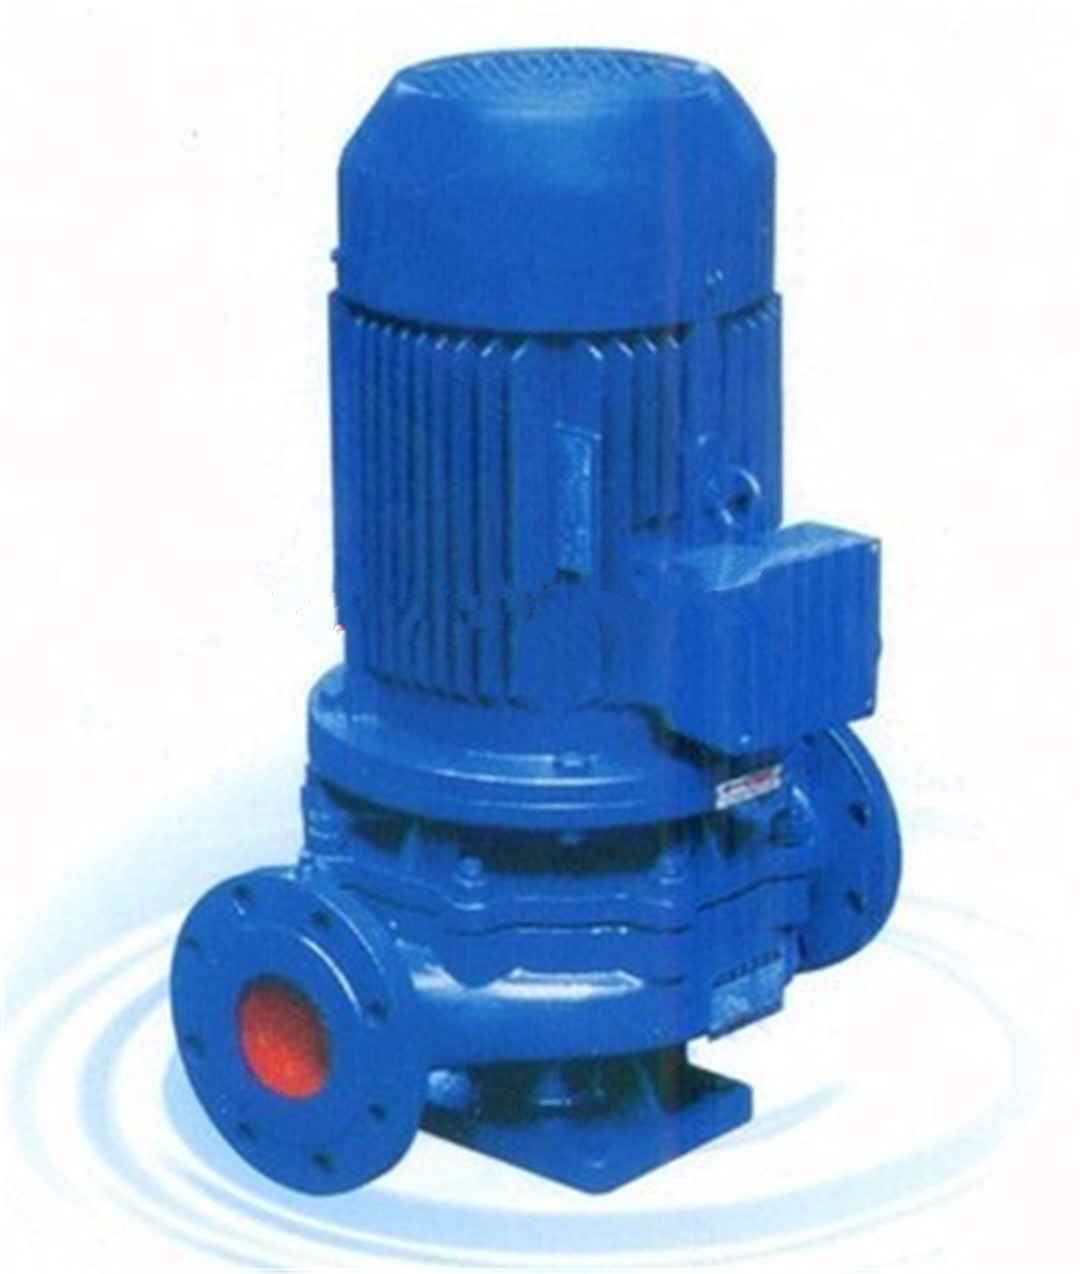 管道泵ISG40-160(I)A用作于冷却塔供水、长距离供水等